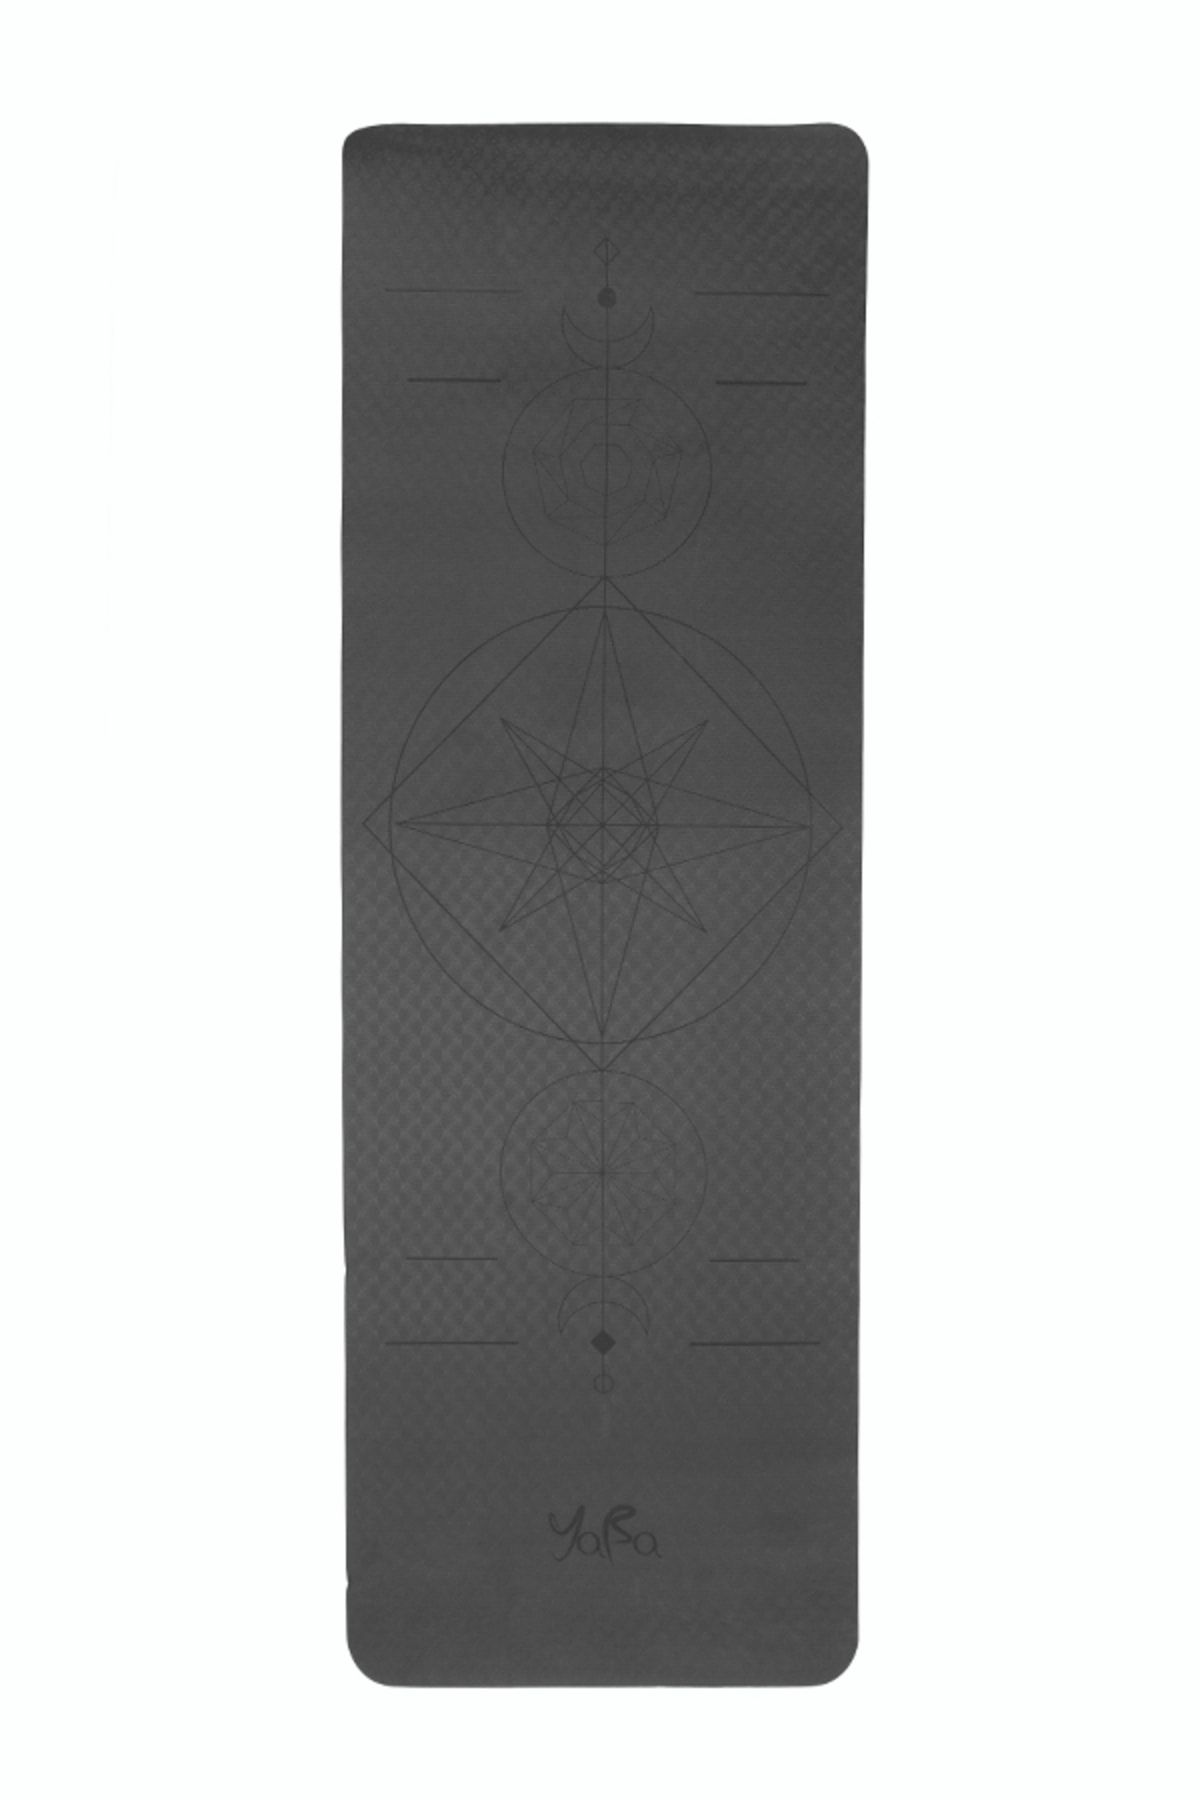 YABA Tpe Yoga Matı 6mm Pilates Matı Yıldız 183*61*0.6cm